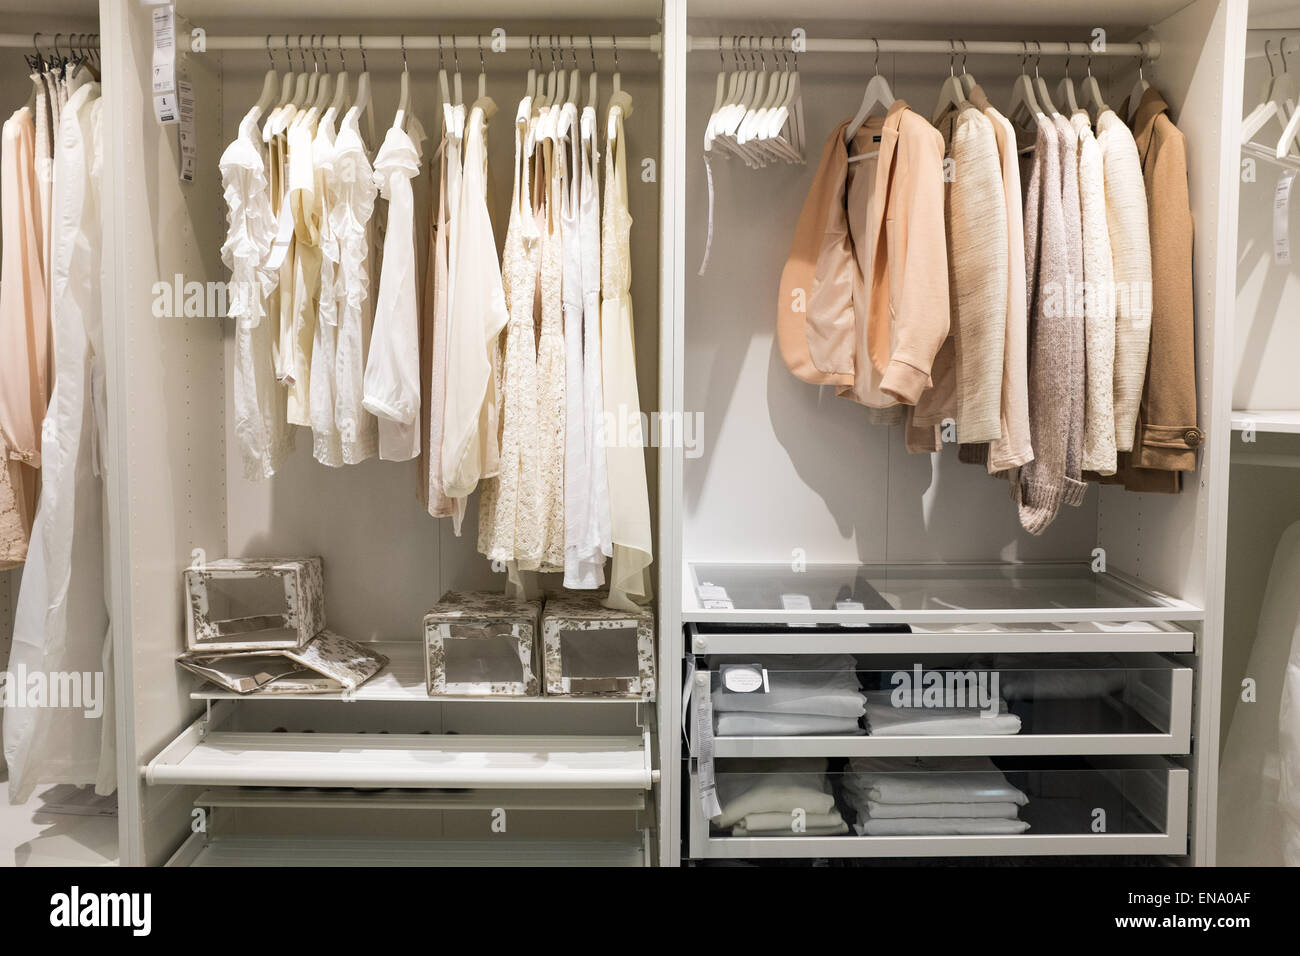 Kleiderschrank Schlafzimmer Anzeige bei Ikea mit Kleidung auf Kleiderbügeln Stockfoto